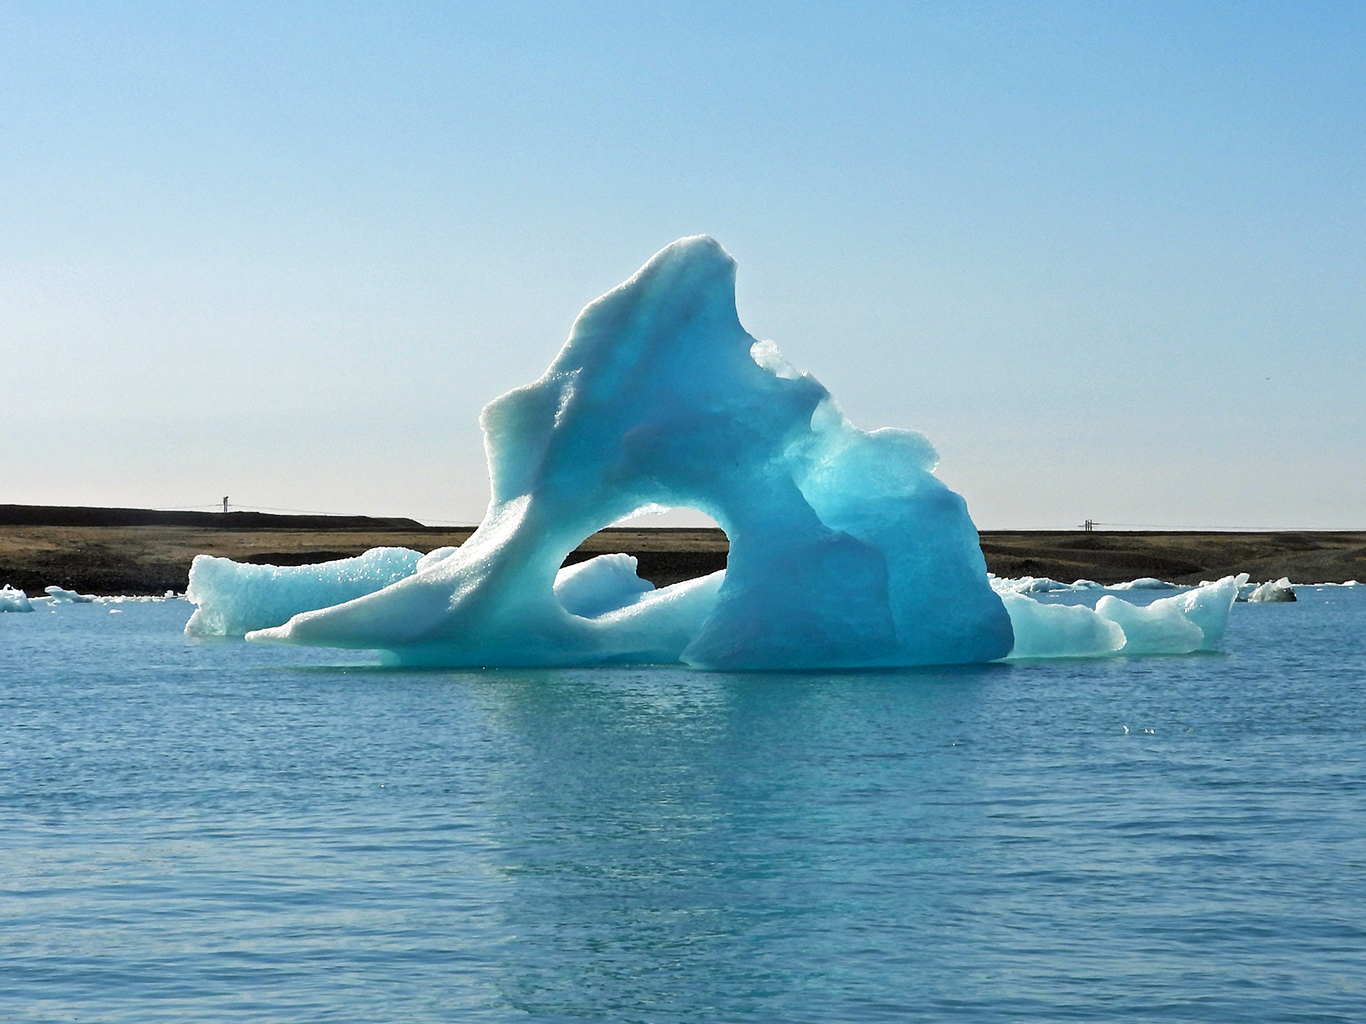 Obrovská tyrkysově modrá ledová kra volně plující po jezeře Jökulsárlón